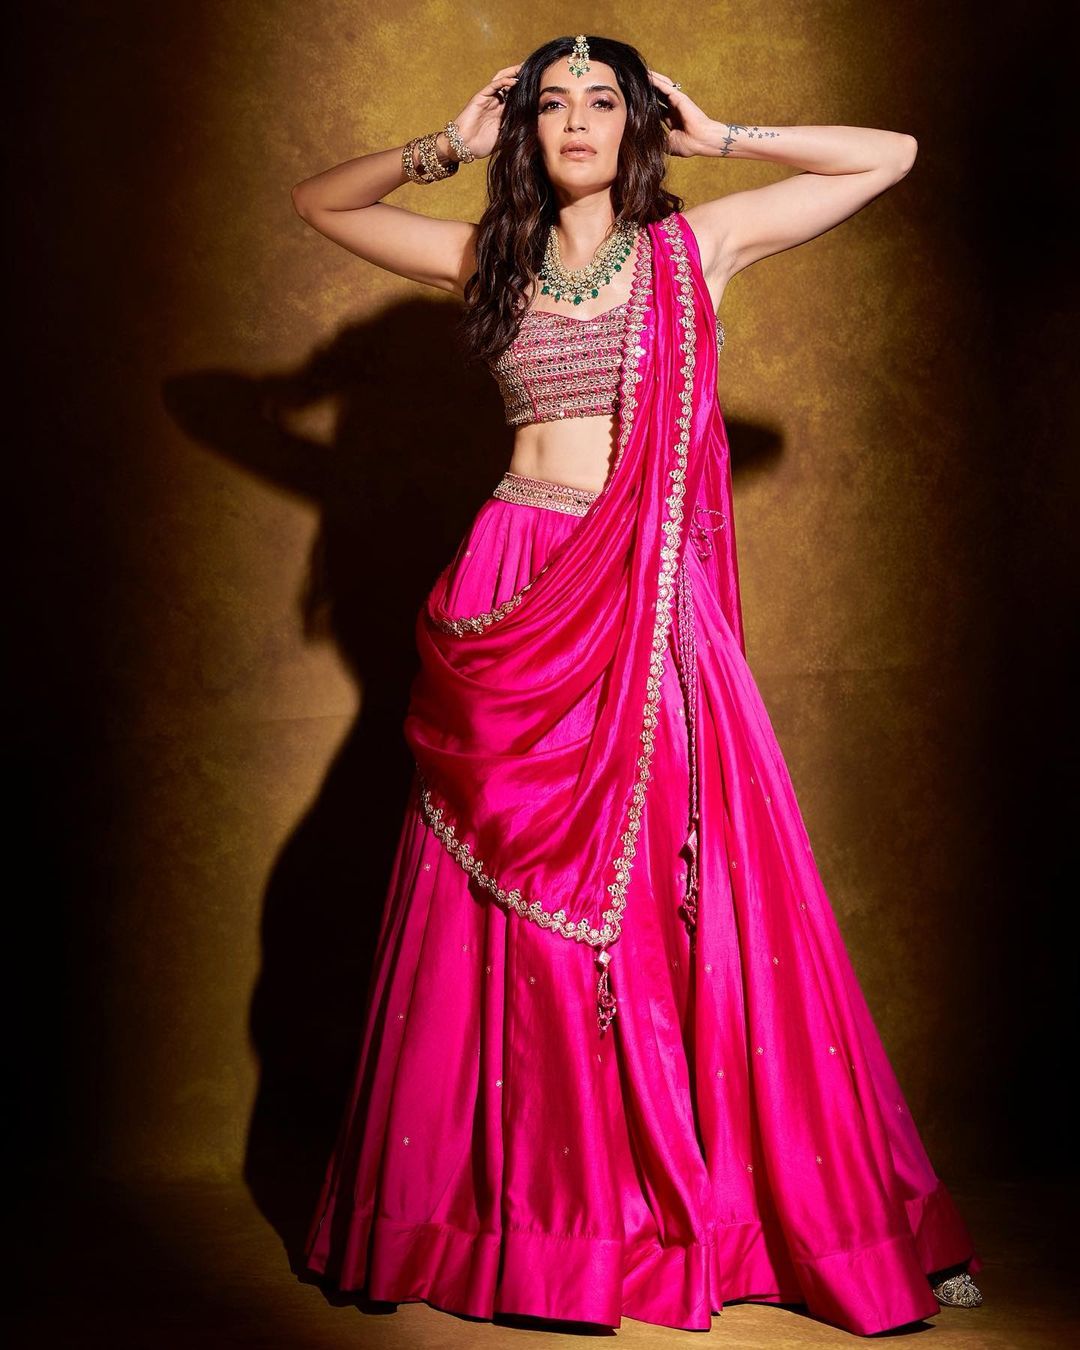  करिश्मा तन्ना चमकीले गुलाबी लहंगे में बेहद खूबसूरत लग रही हैं. (फोटो साभार: Instagram@karishmaktanna)